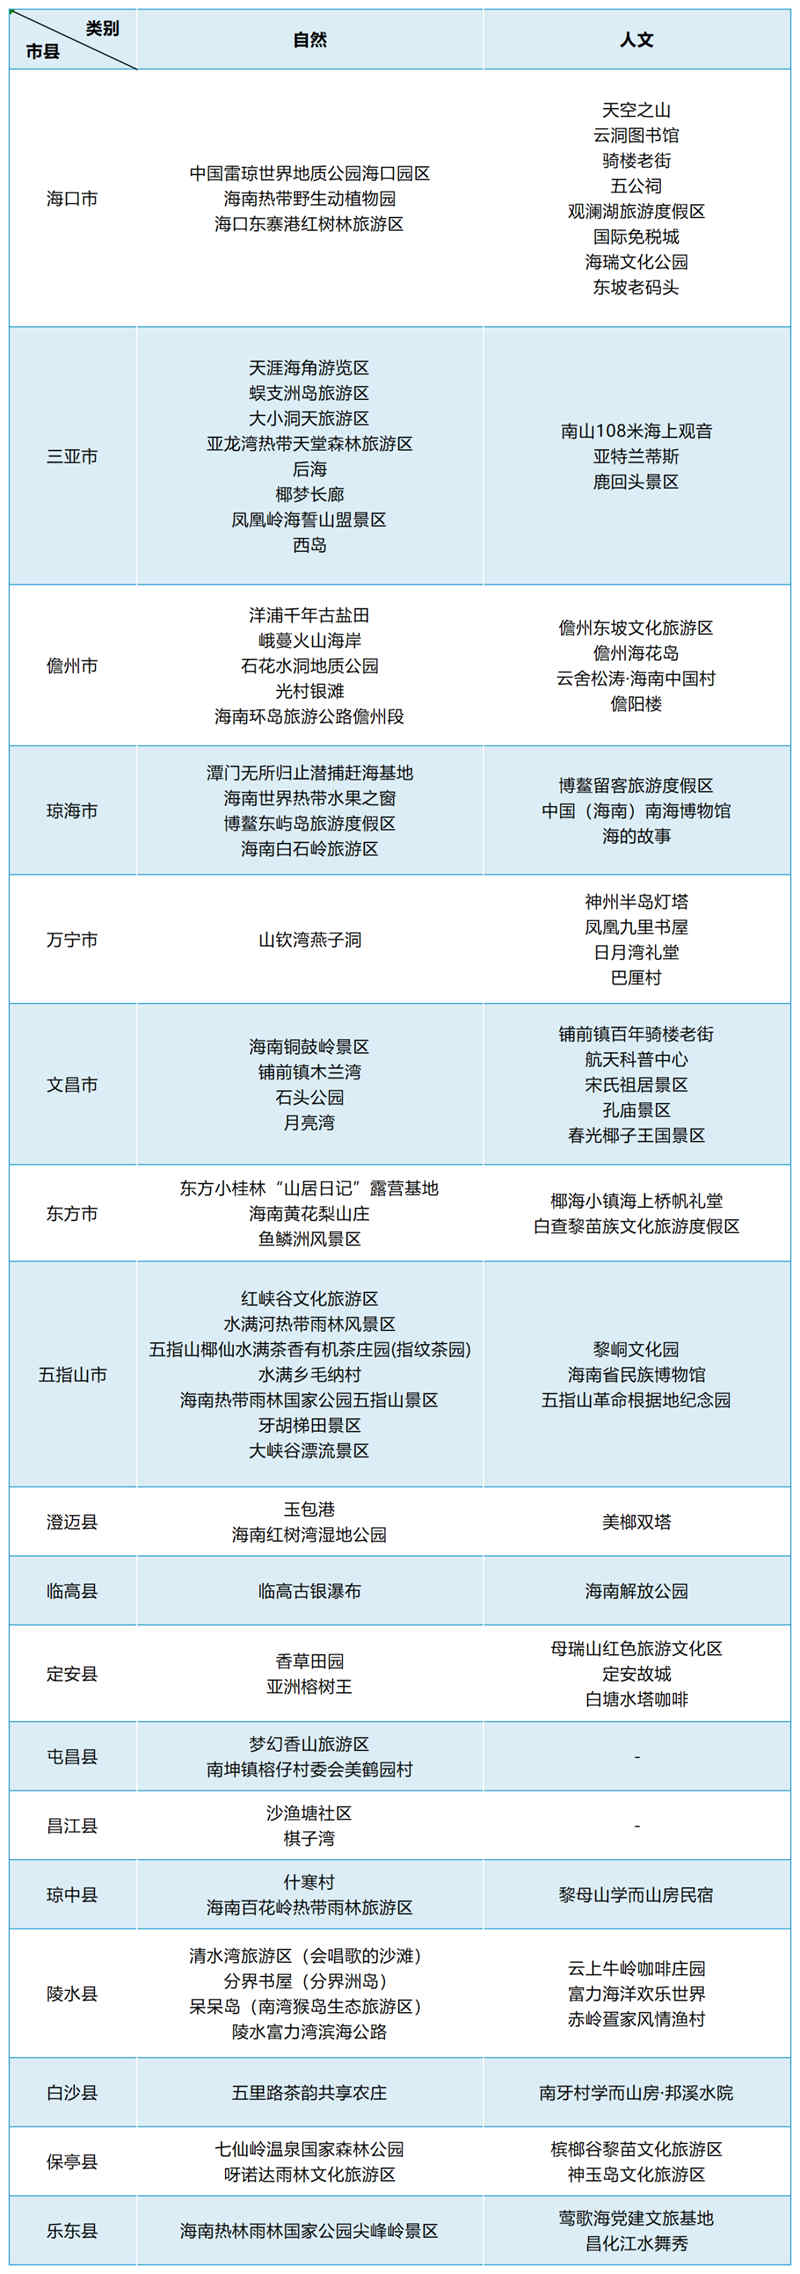 網紅景點名單。海南省旅游協會供圖